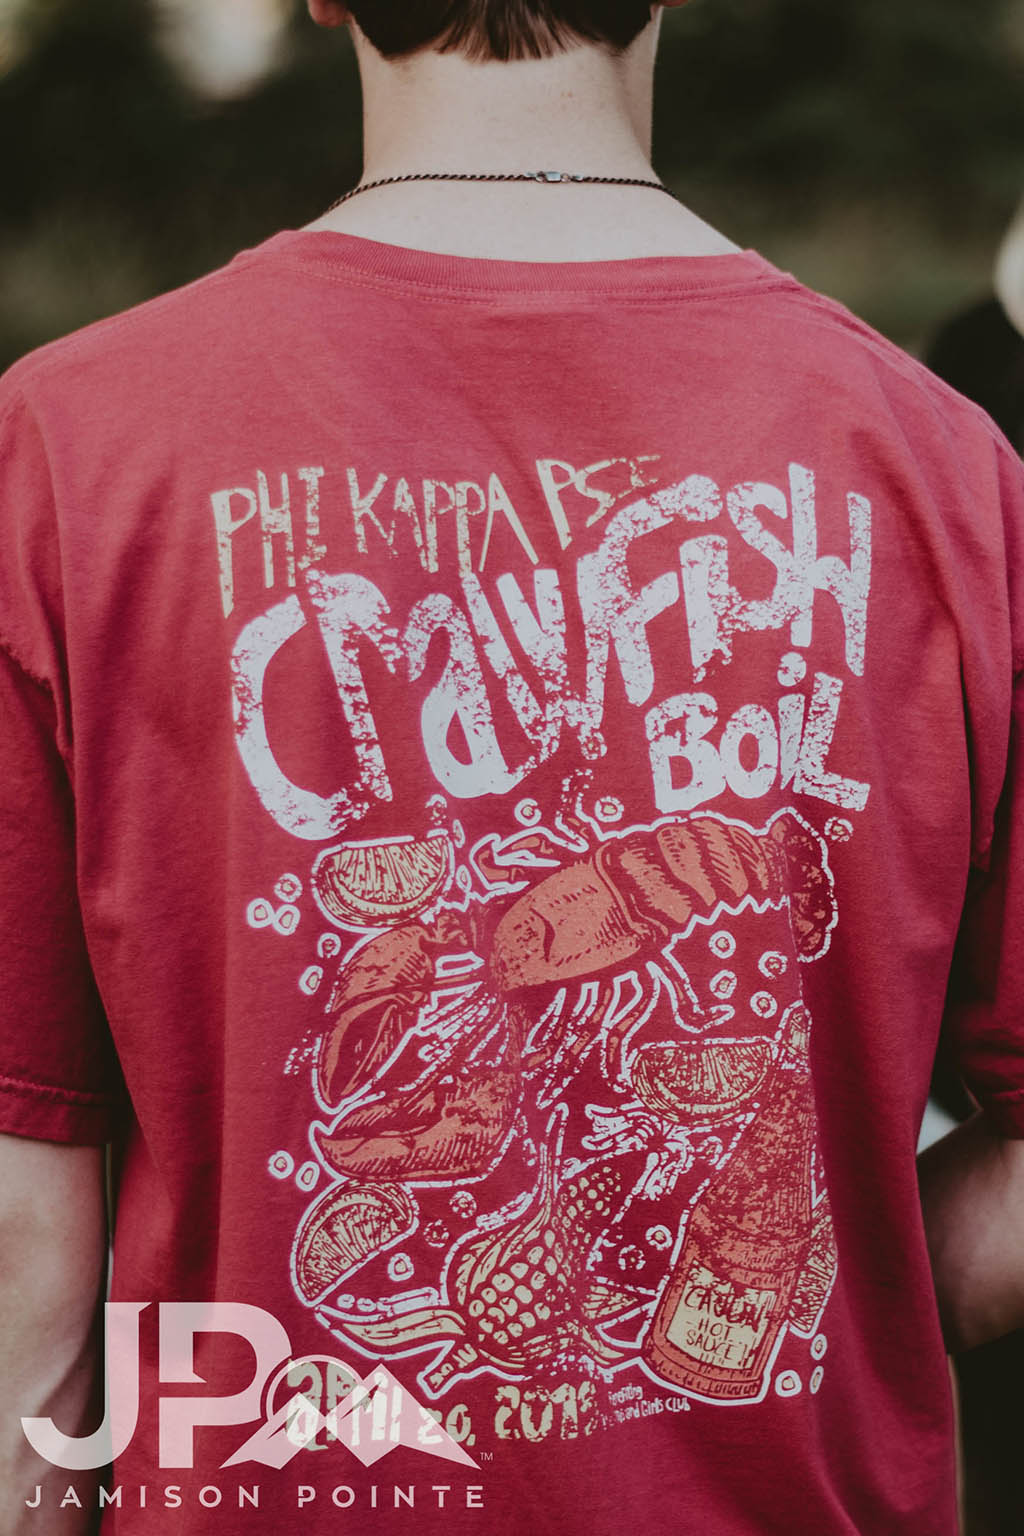 Phi Kappa Psi Crawfish Boil Social Tee